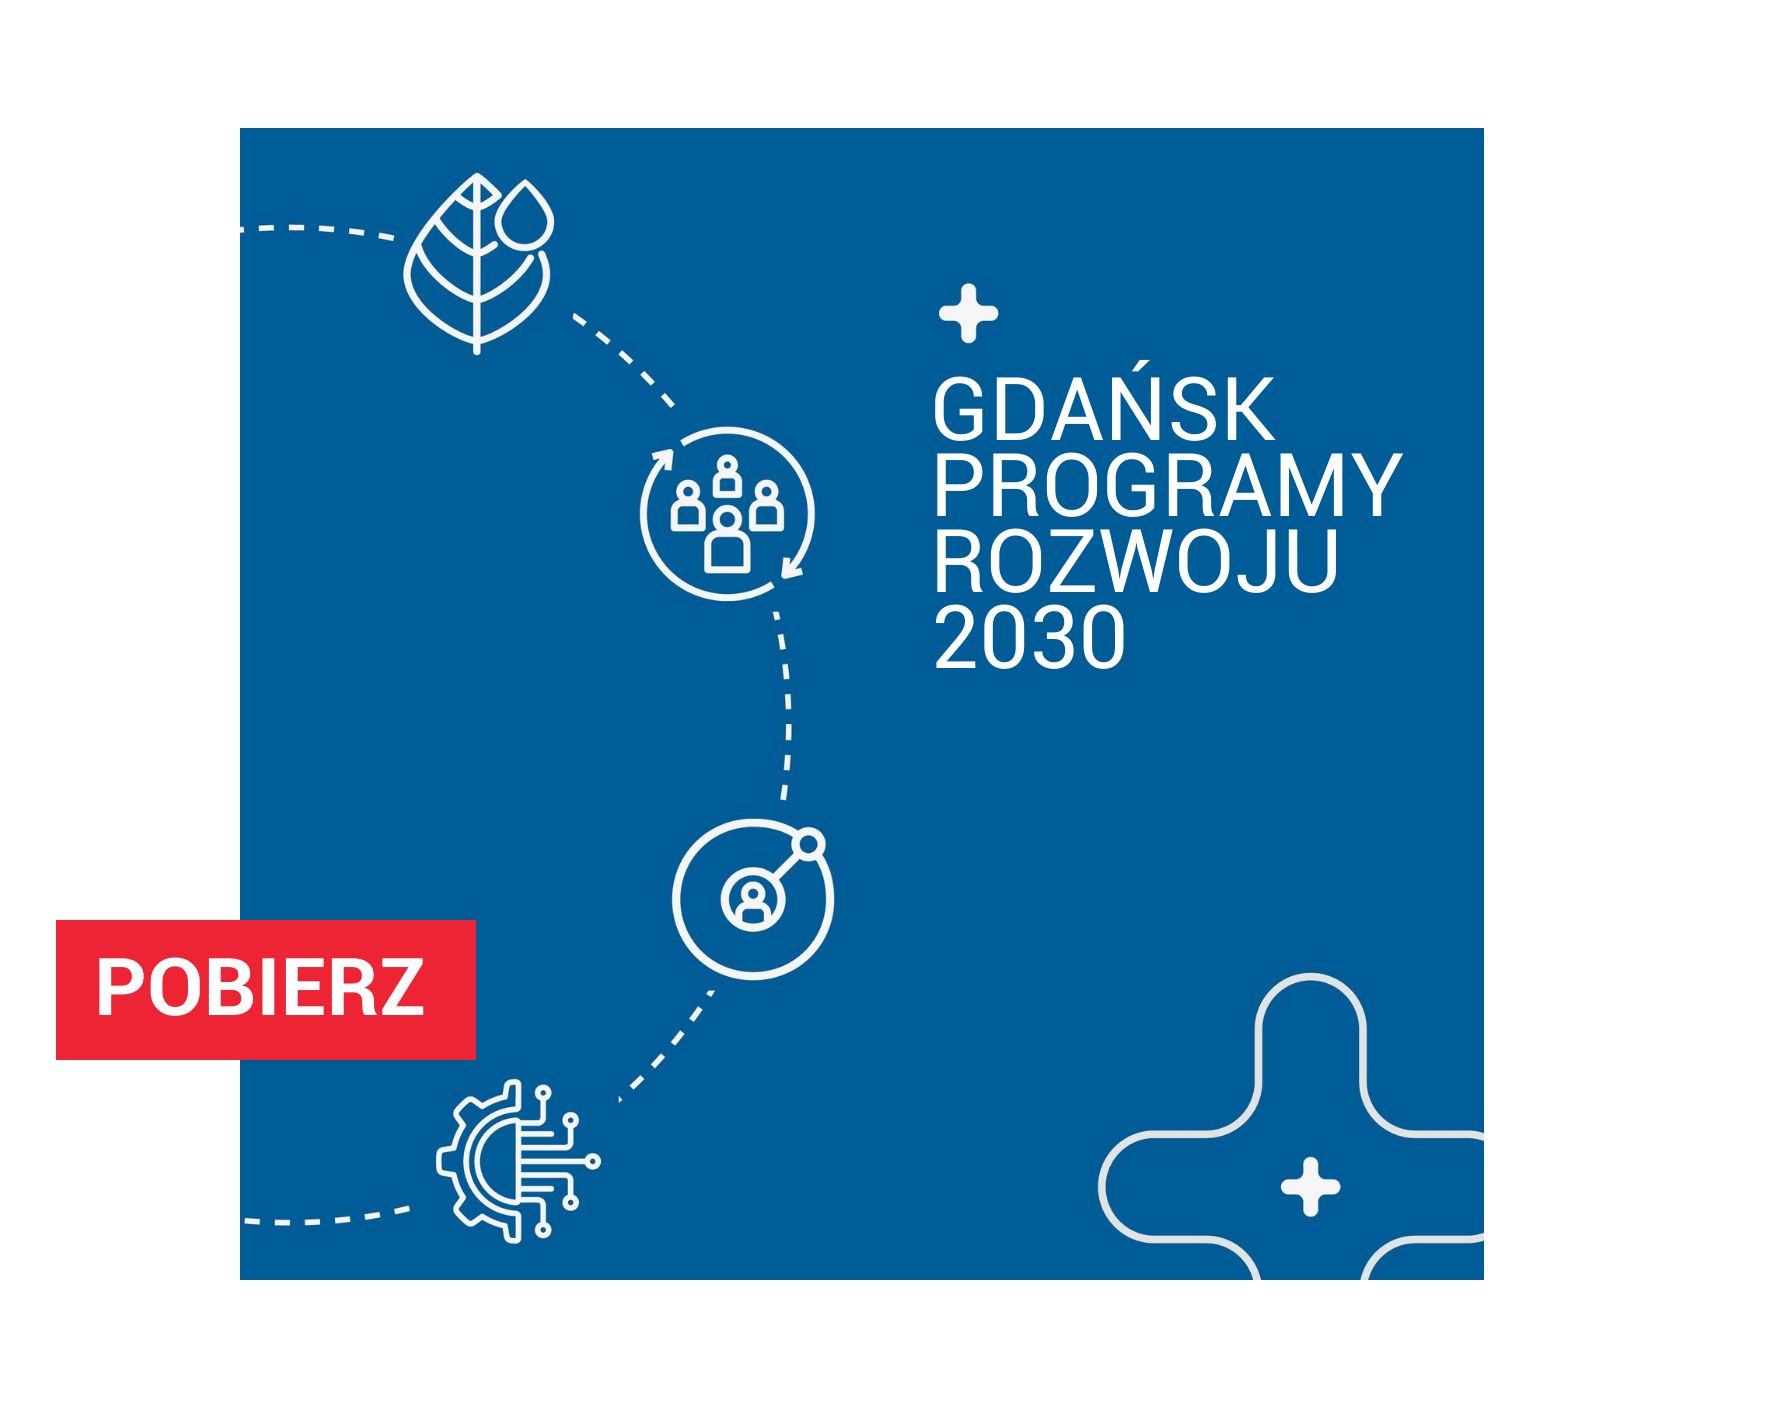 Niebieski baner Gdańsk programy rozwoju 2030 - pobierz